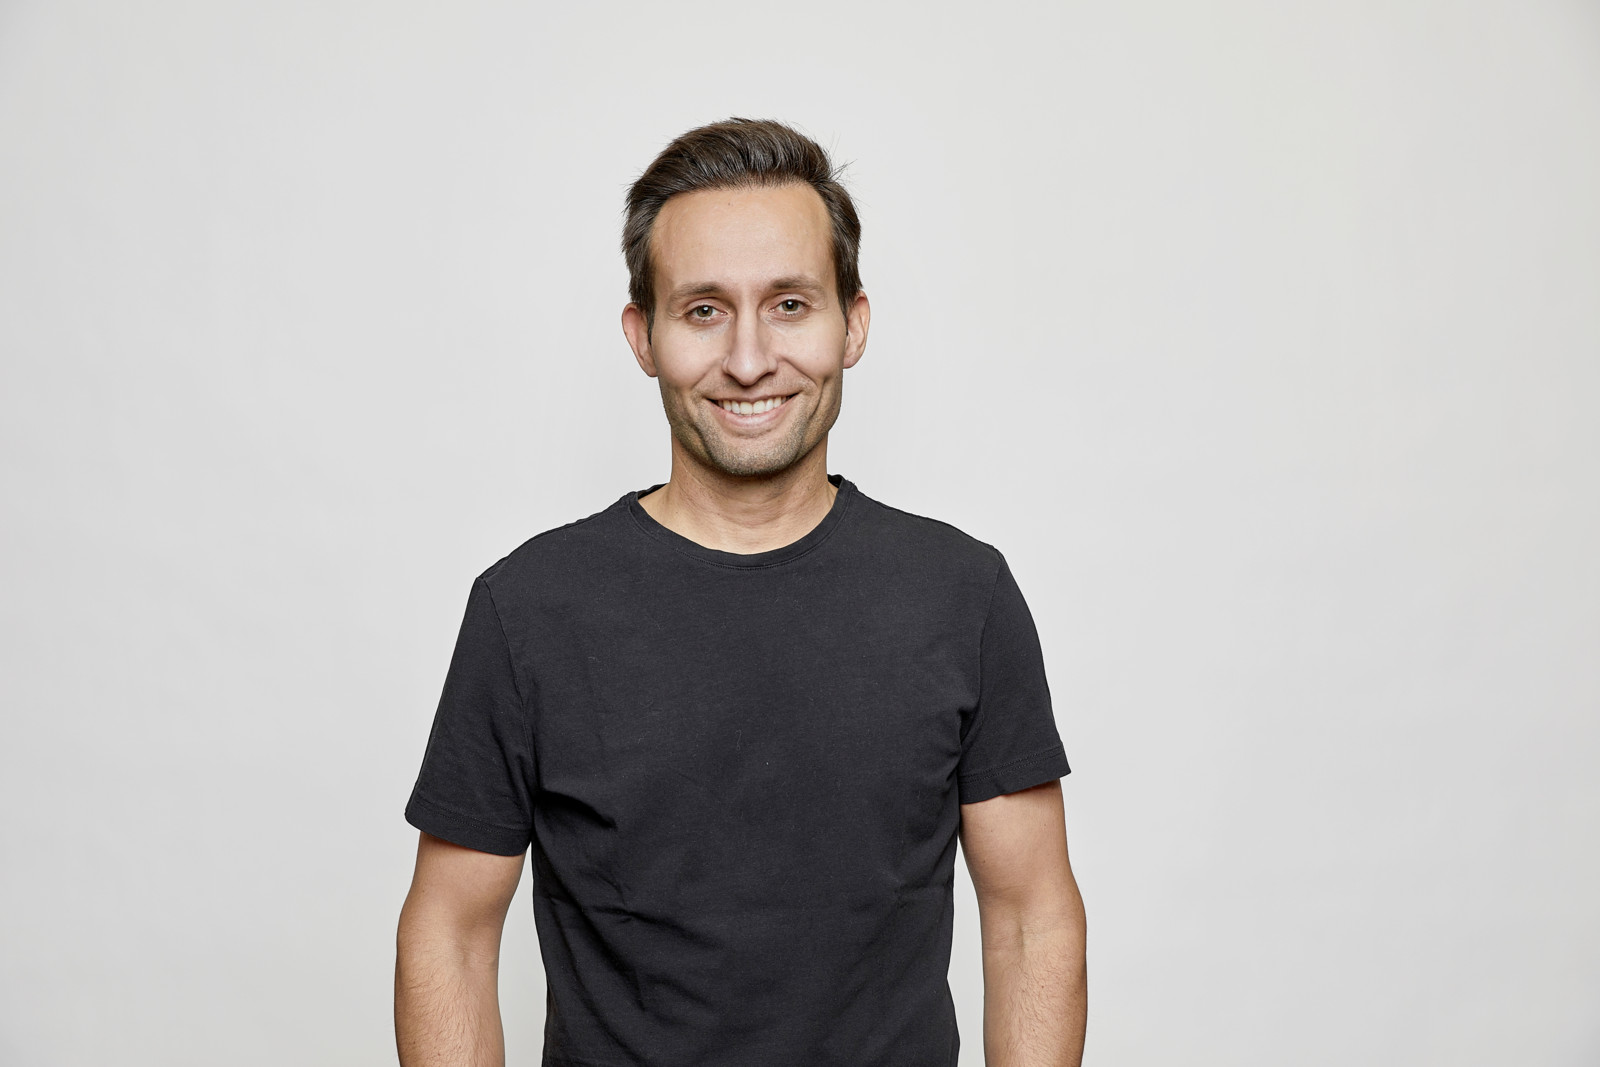 Markus Winter ist seit 2020 CEO bei der Kfzteile24 GmbH. Er war zuvor bei verschiedenen E-Commerce-Anbietern wie der Fashion4home GmbH oder der Internetstores-Gruppe tätig.